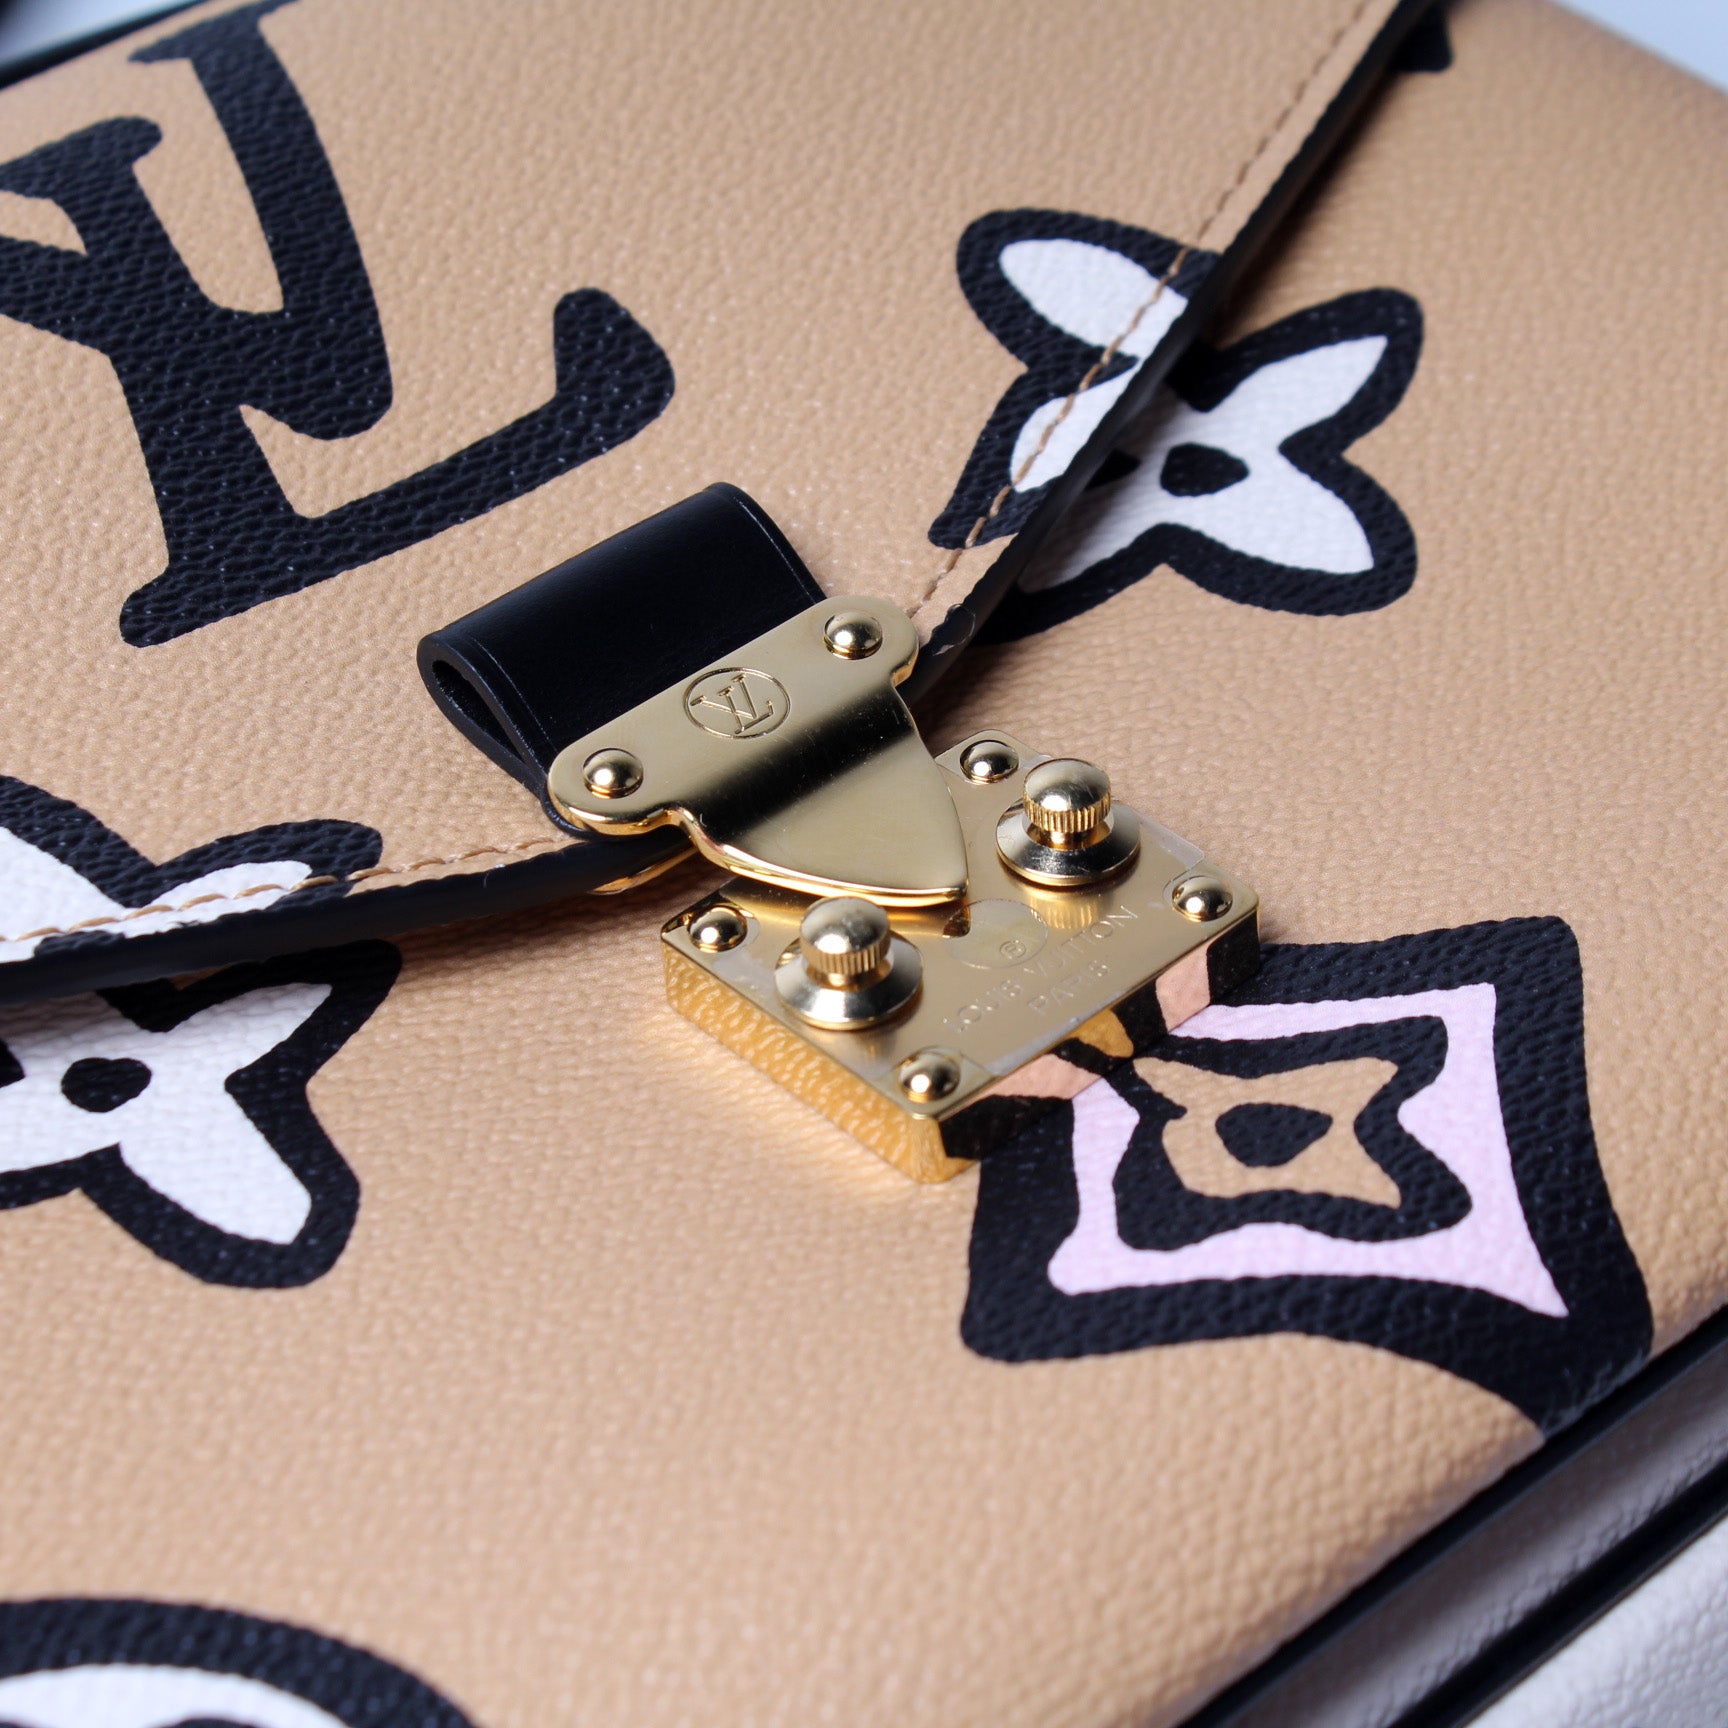 Pochette Metis Wild At Heart – Keeks Designer Handbags